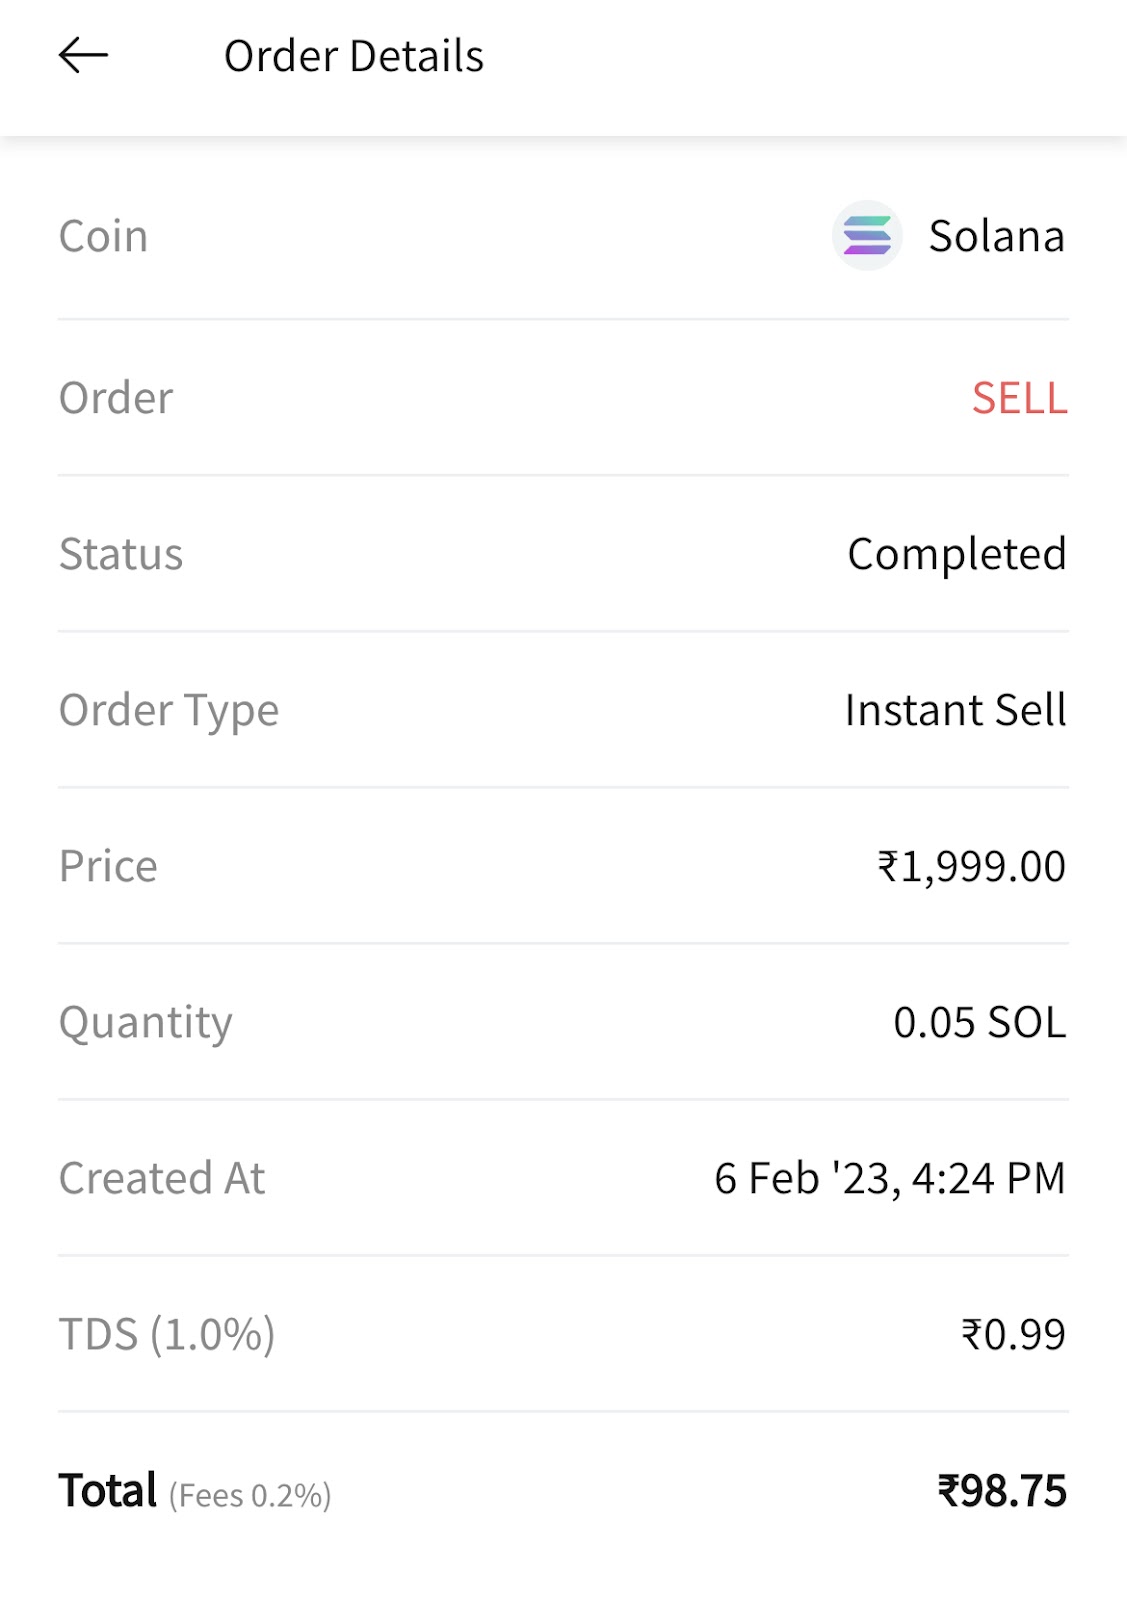 צילום מסך מבורסה הודית המציג ניכוי של TDS